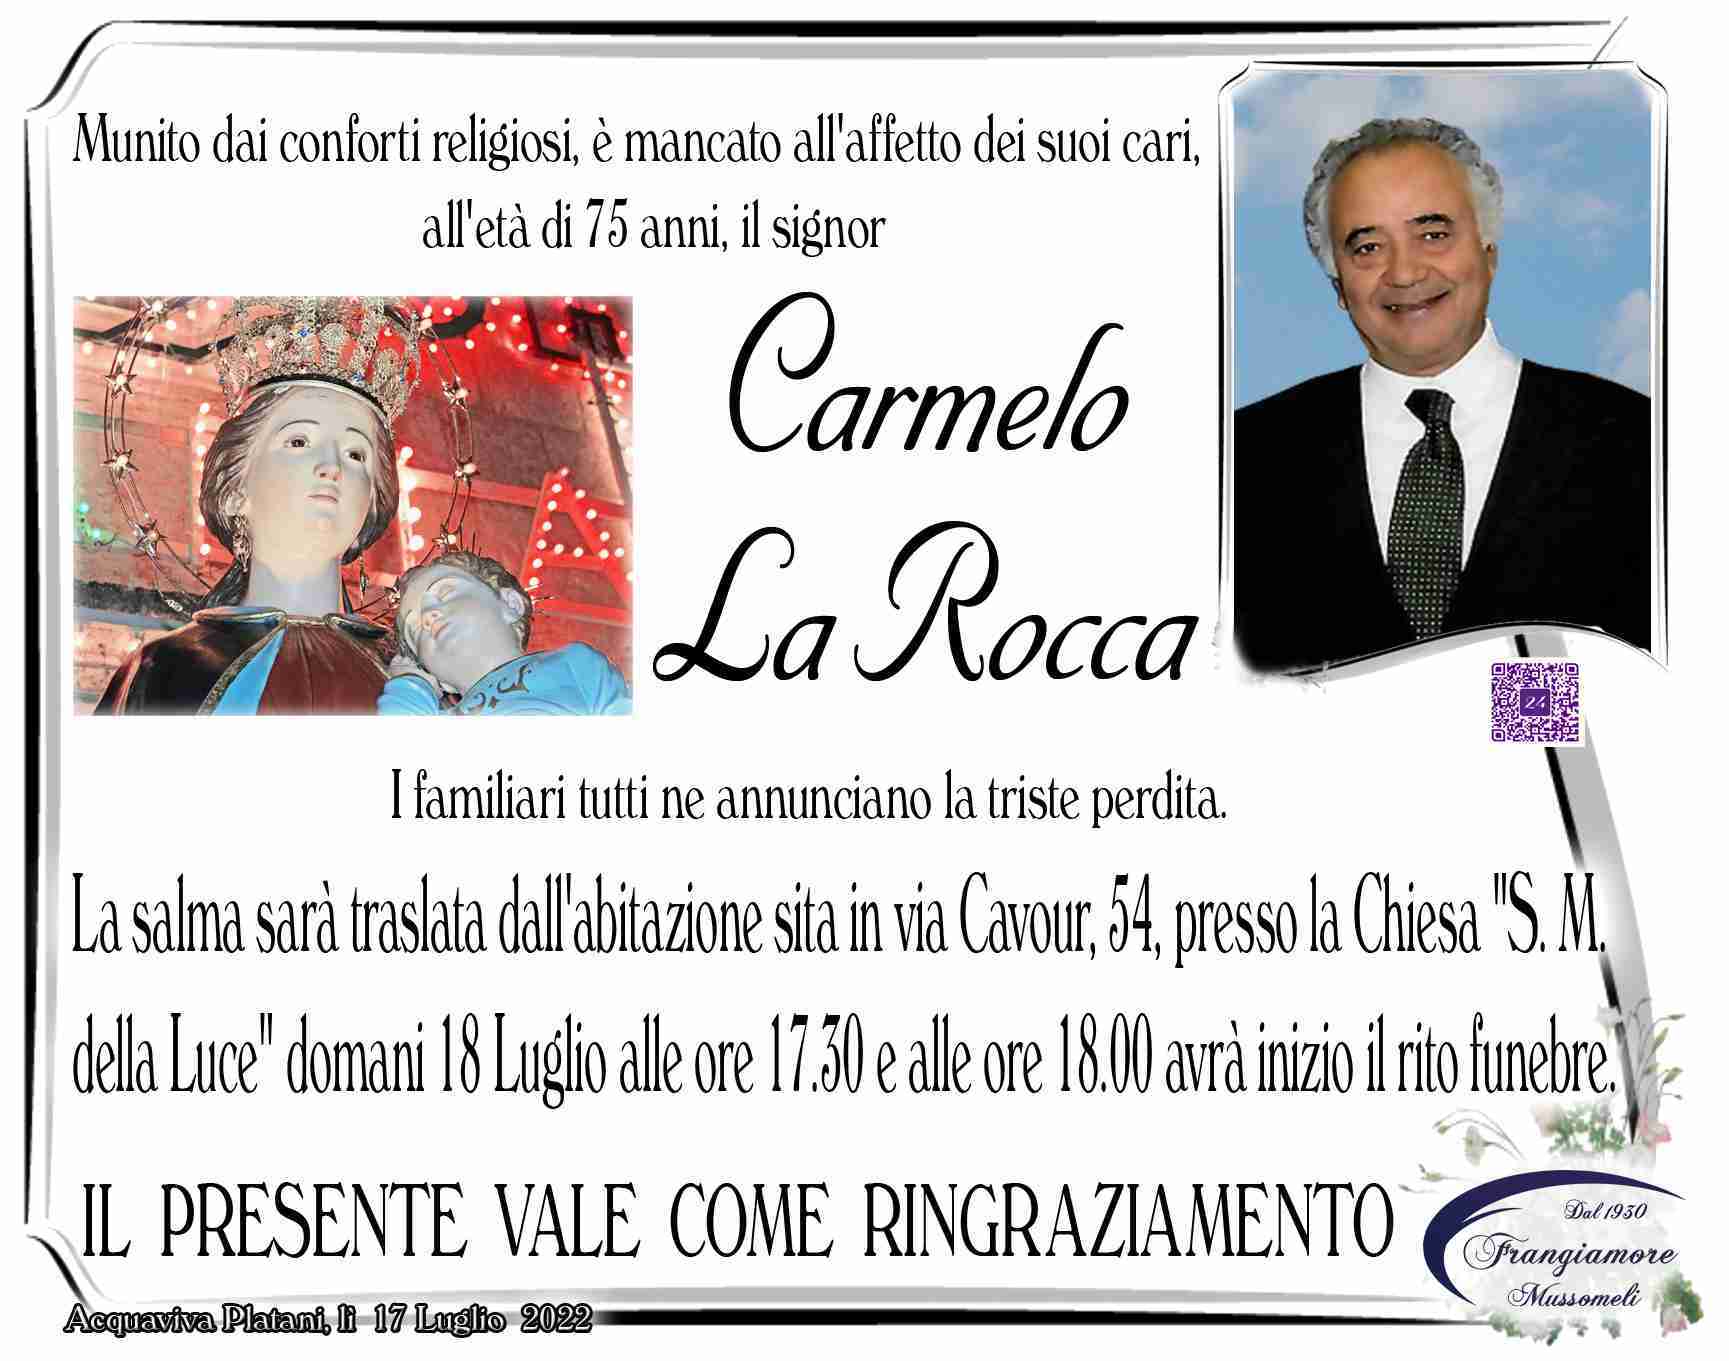 Carmelo La Rocca